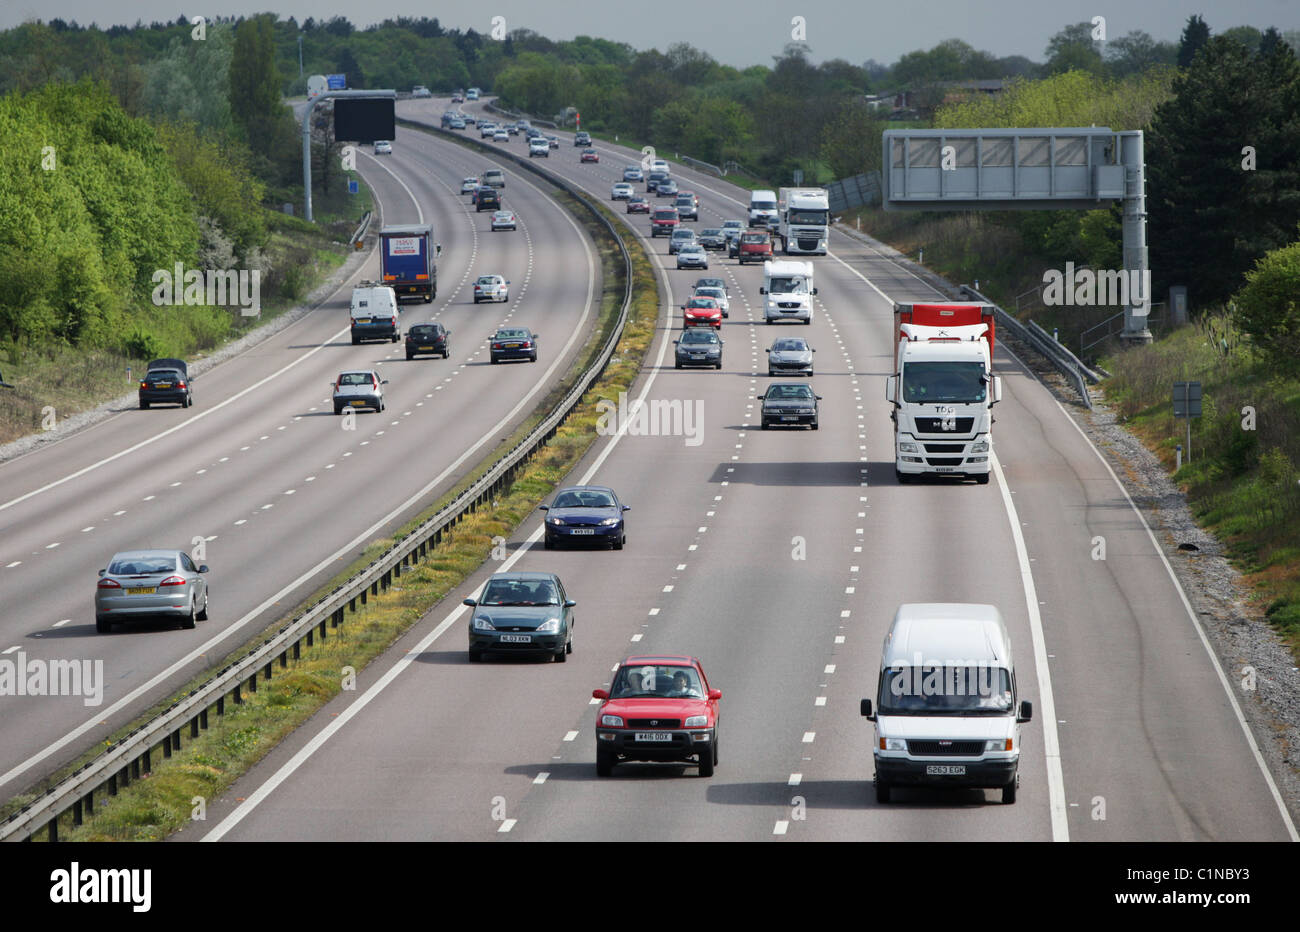 M11 Autostrada del traffico in Essex, tra la giunzione 6 (M25) di interscambio e la giunzione 7 Harlow. Foto Stock